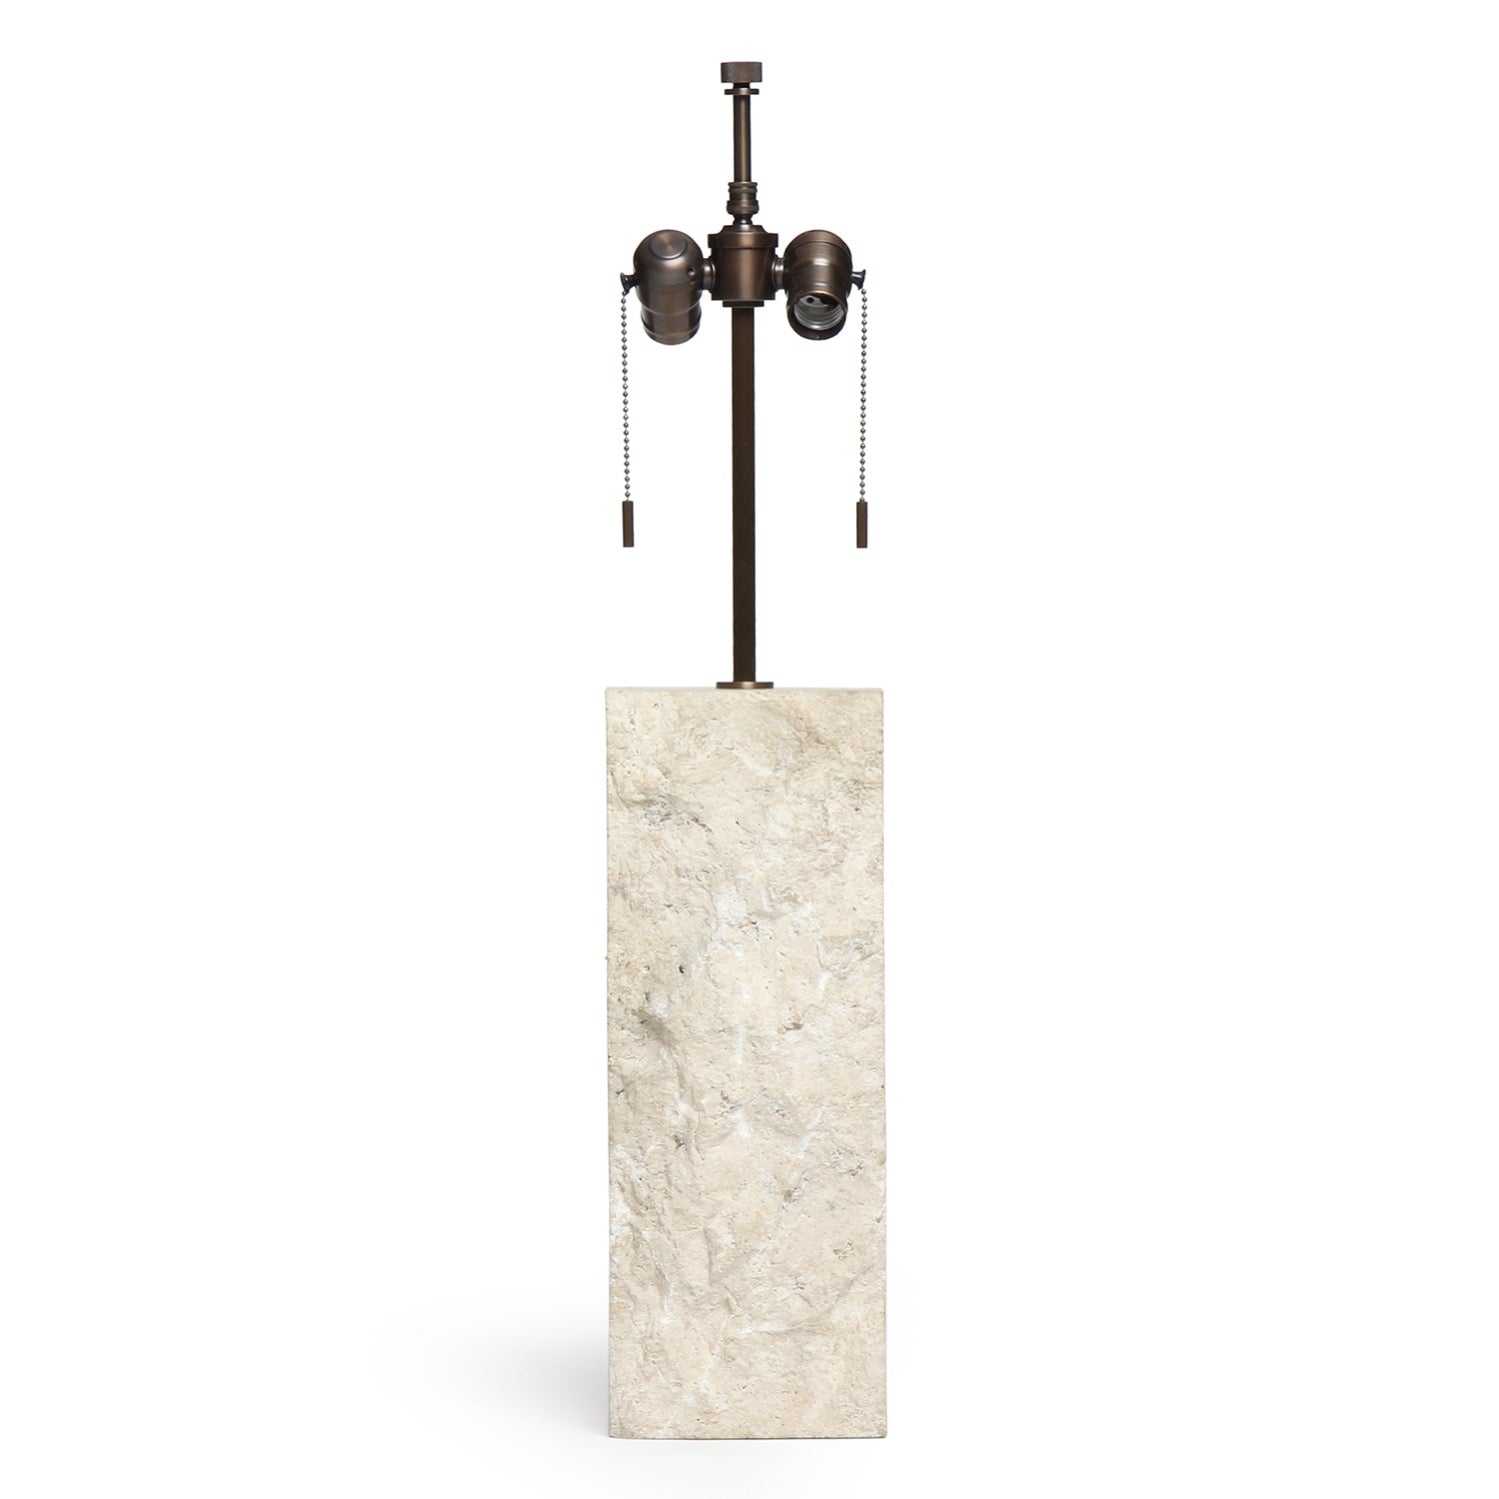 Limestone Table Lamp for Hansen Lighting Co.